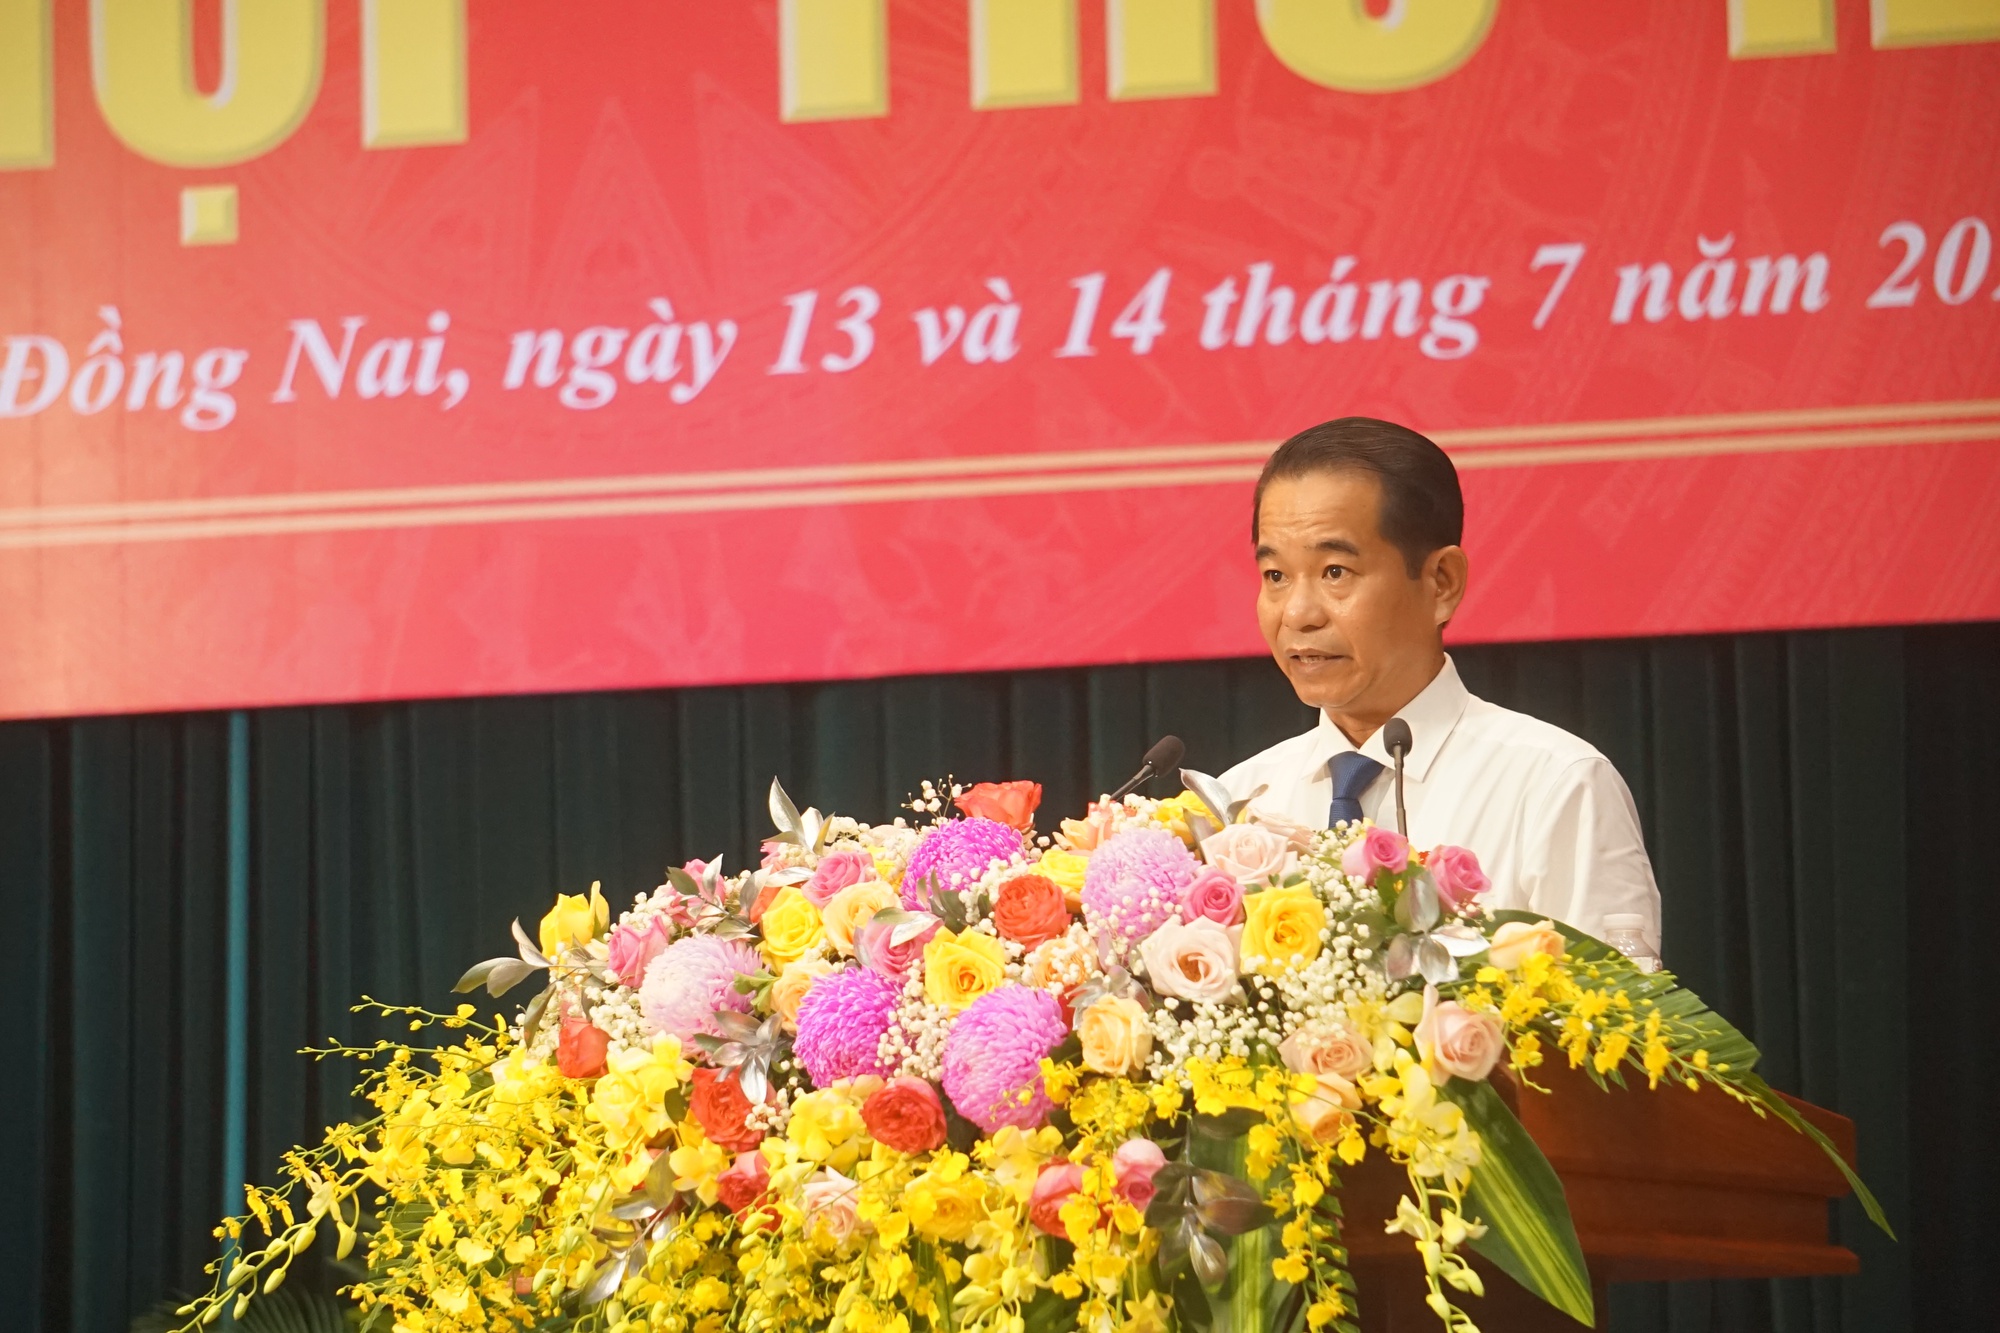 Khai mạc Kỳ họp thứ 12 HĐND khoá X tỉnh Đồng Nai: Sản xuất nông nghiệp gặp khó nhưng vẫn phát triển ổn định - Ảnh 1.